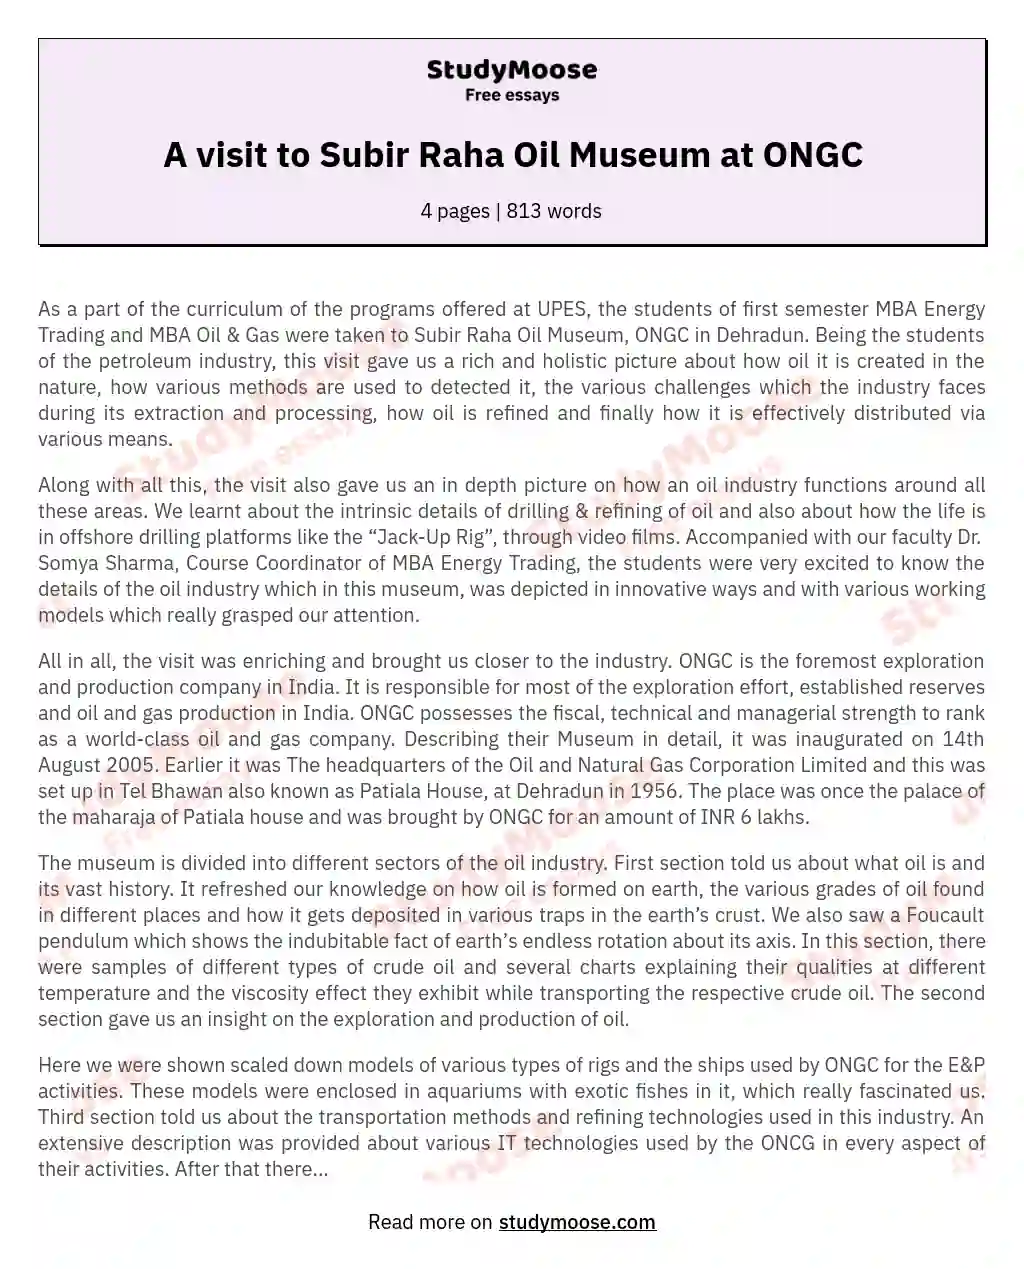 A visit to Subir Raha Oil Museum at ONGC